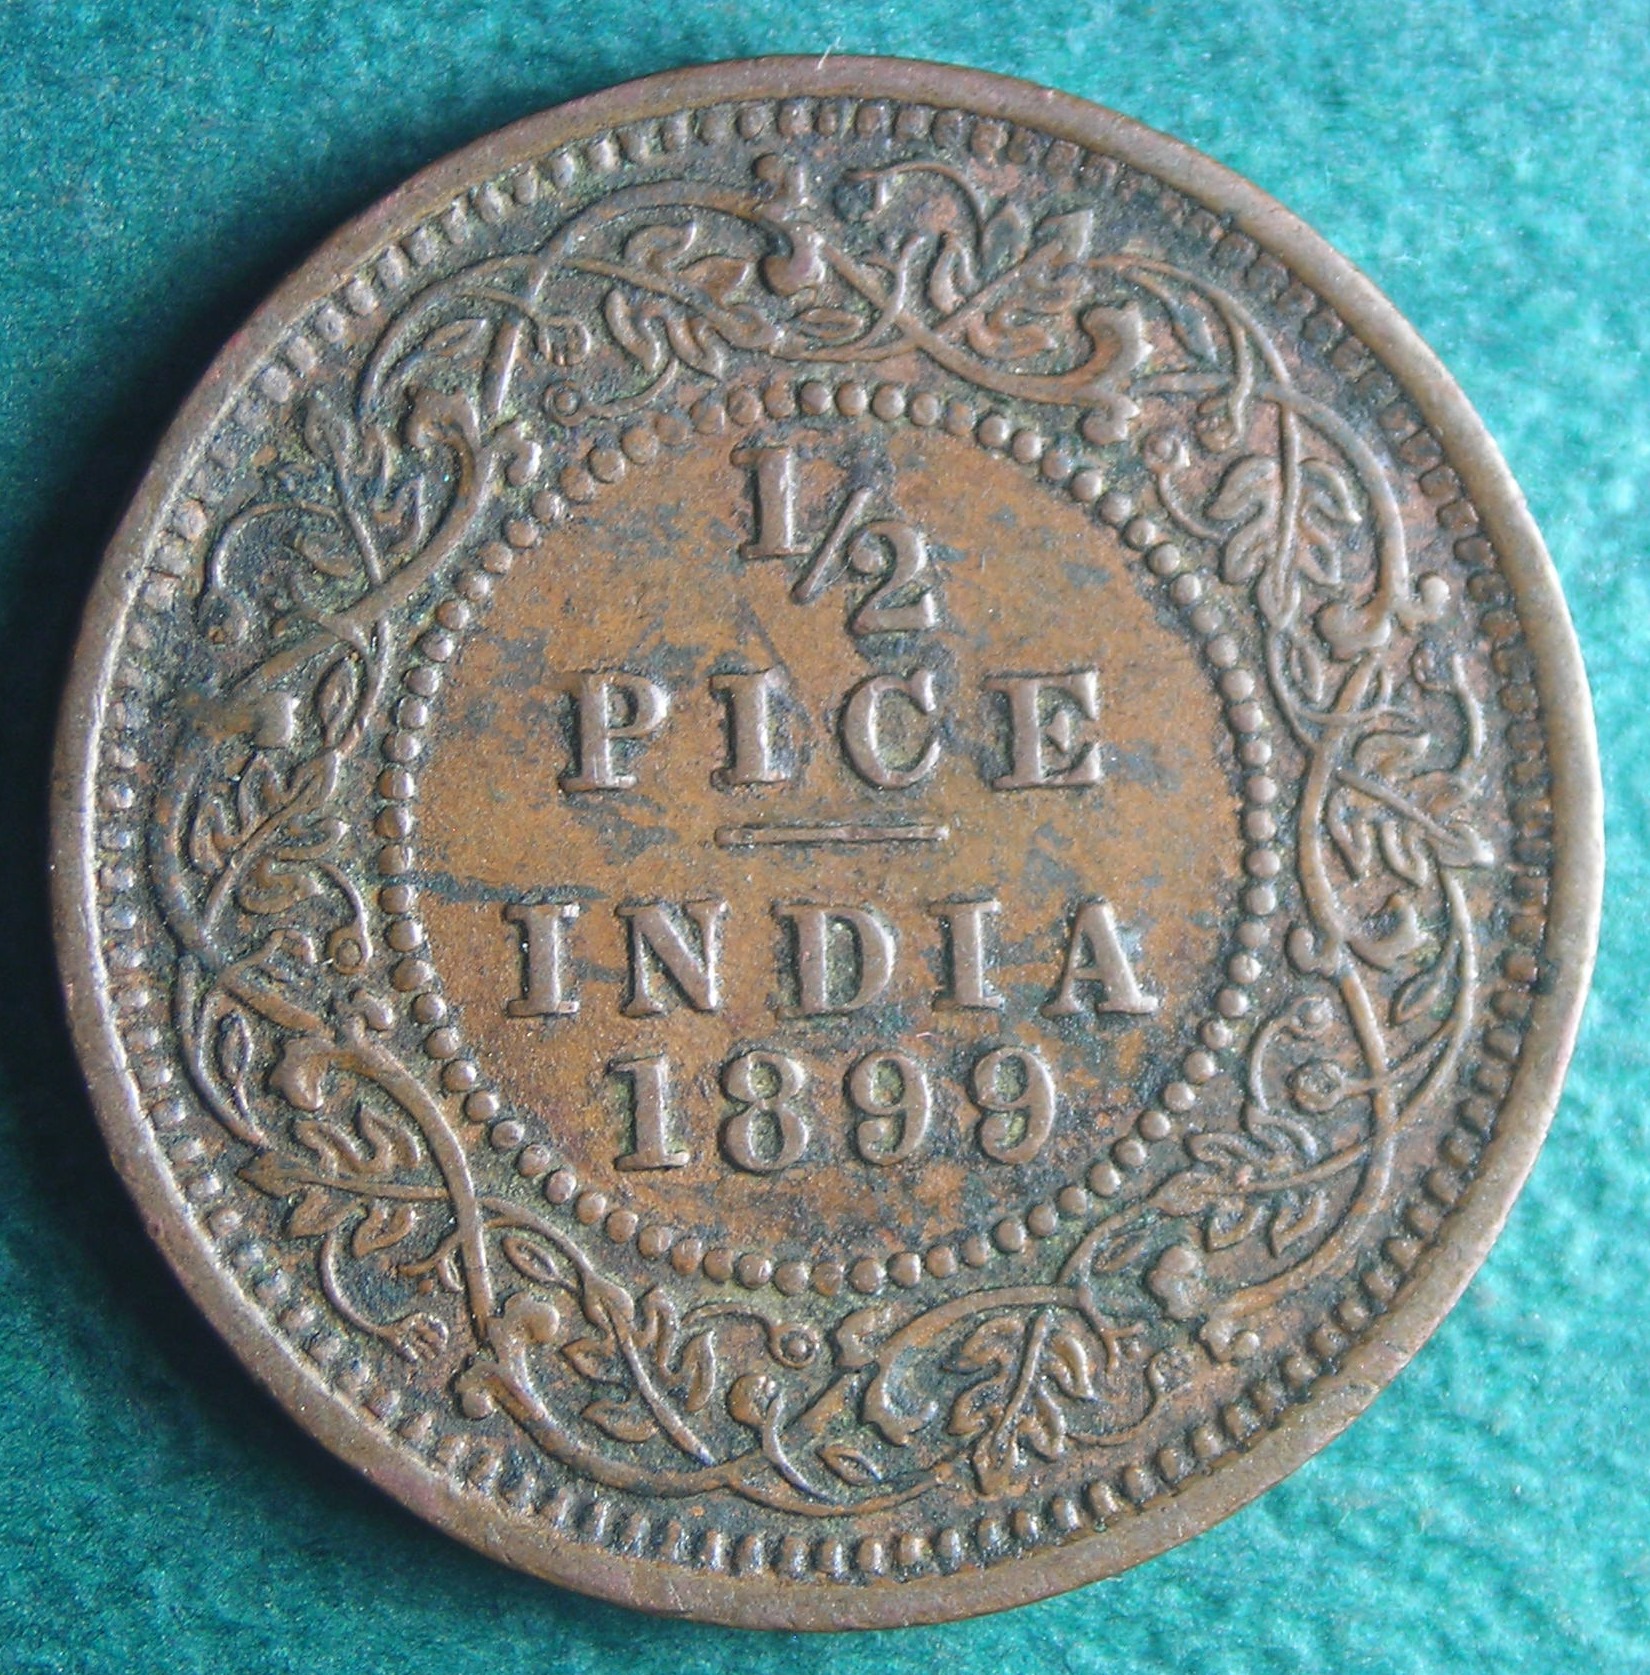 1899 India 1-2 pice rev.JPG